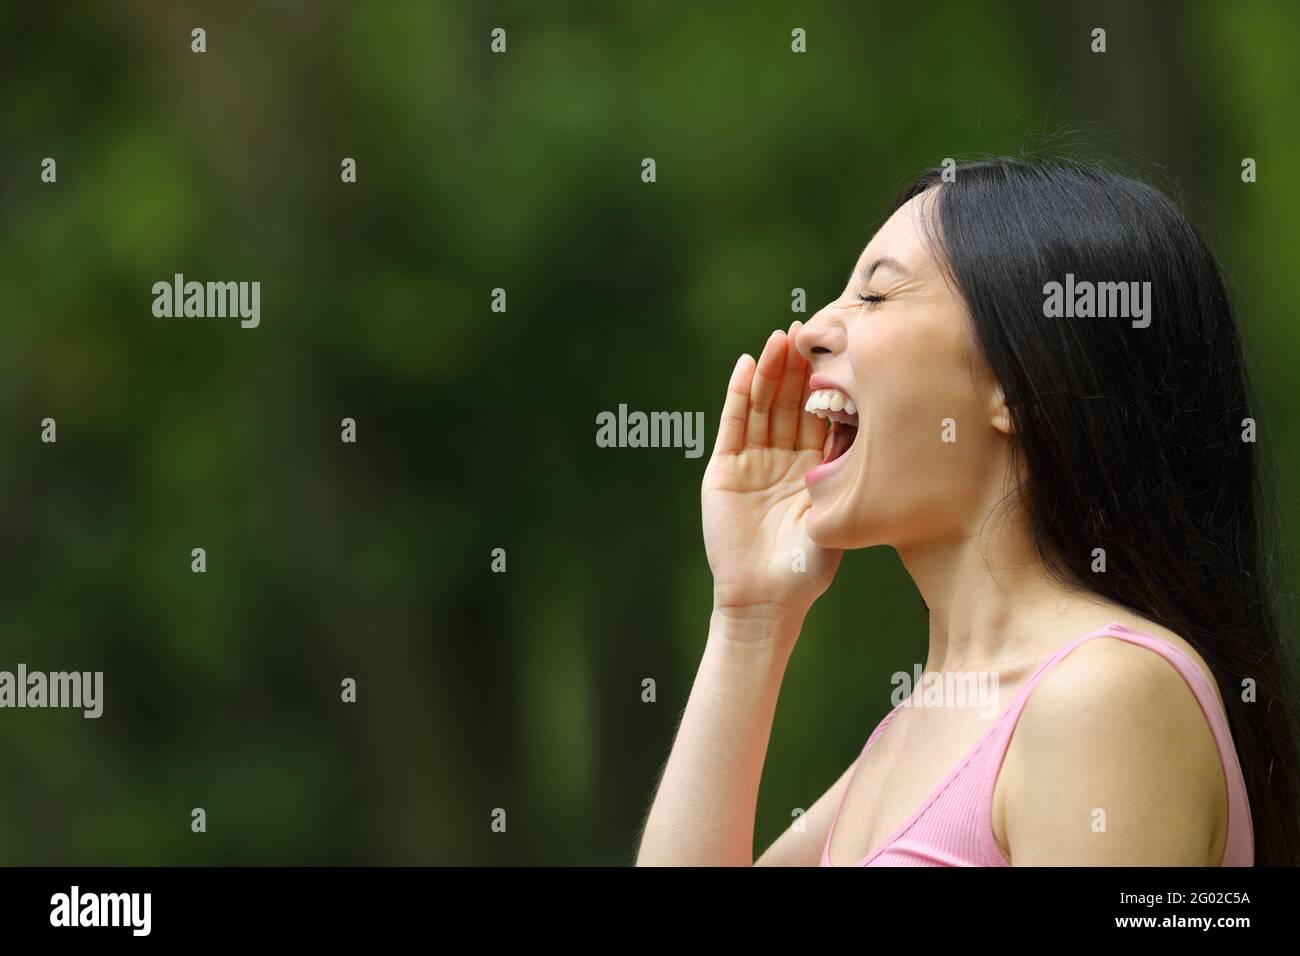 Profil d'une femme asiatique criant avec la main sur la bouche dans un parc Banque D'Images